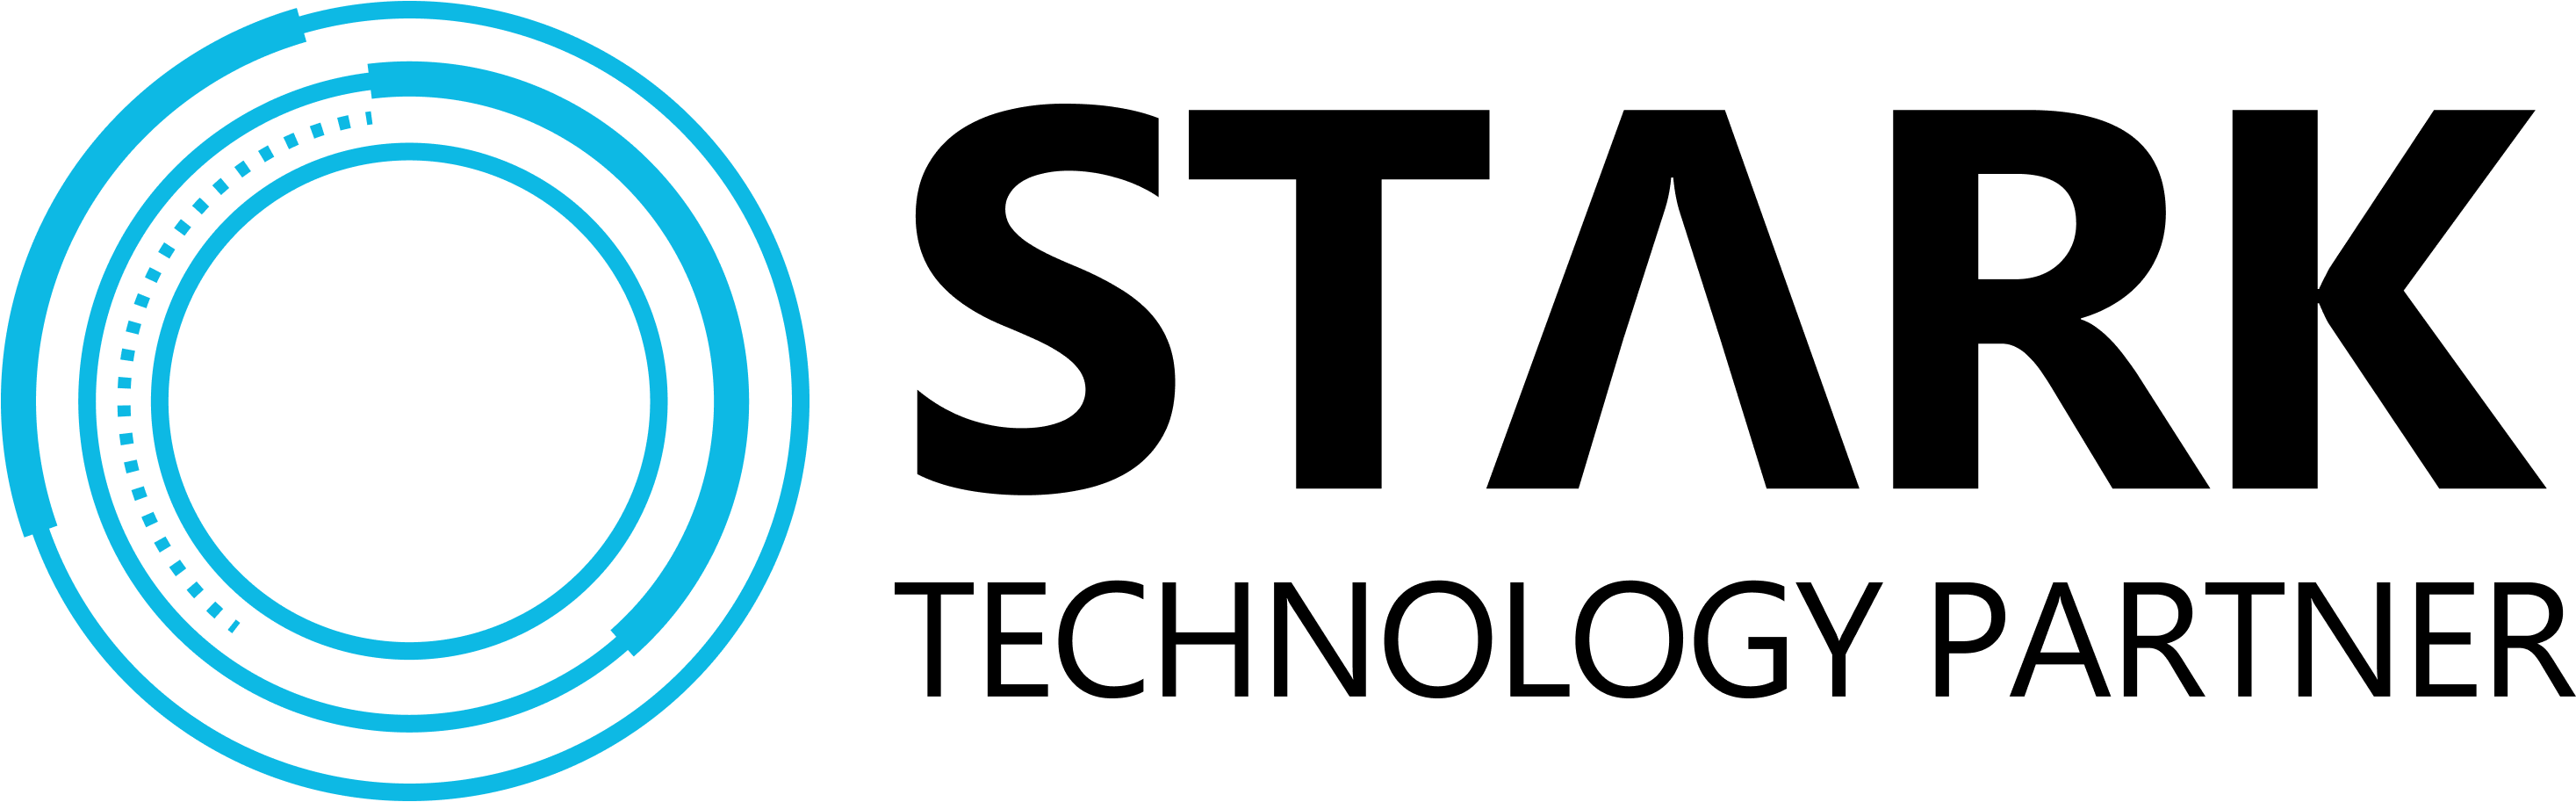 Stark Technology Partner Logo